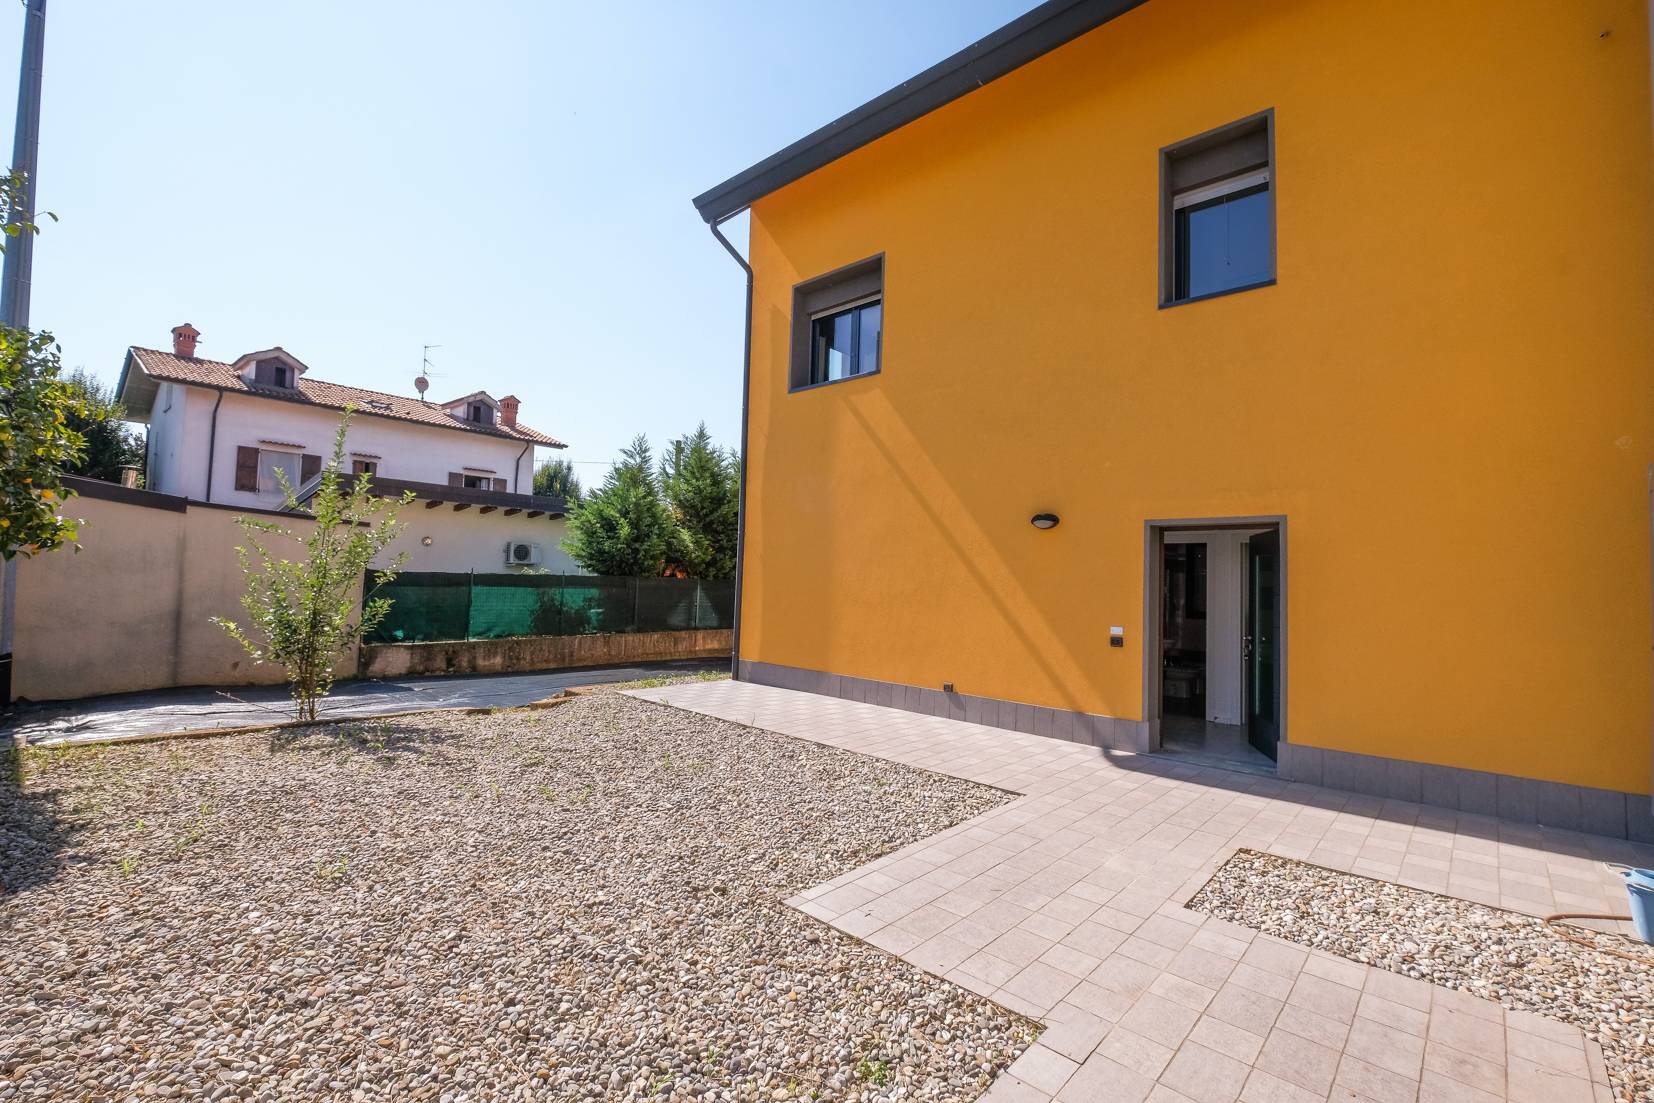 Villa a Schiera in vendita a Ciserano, 4 locali, prezzo € 270.000 | PortaleAgenzieImmobiliari.it